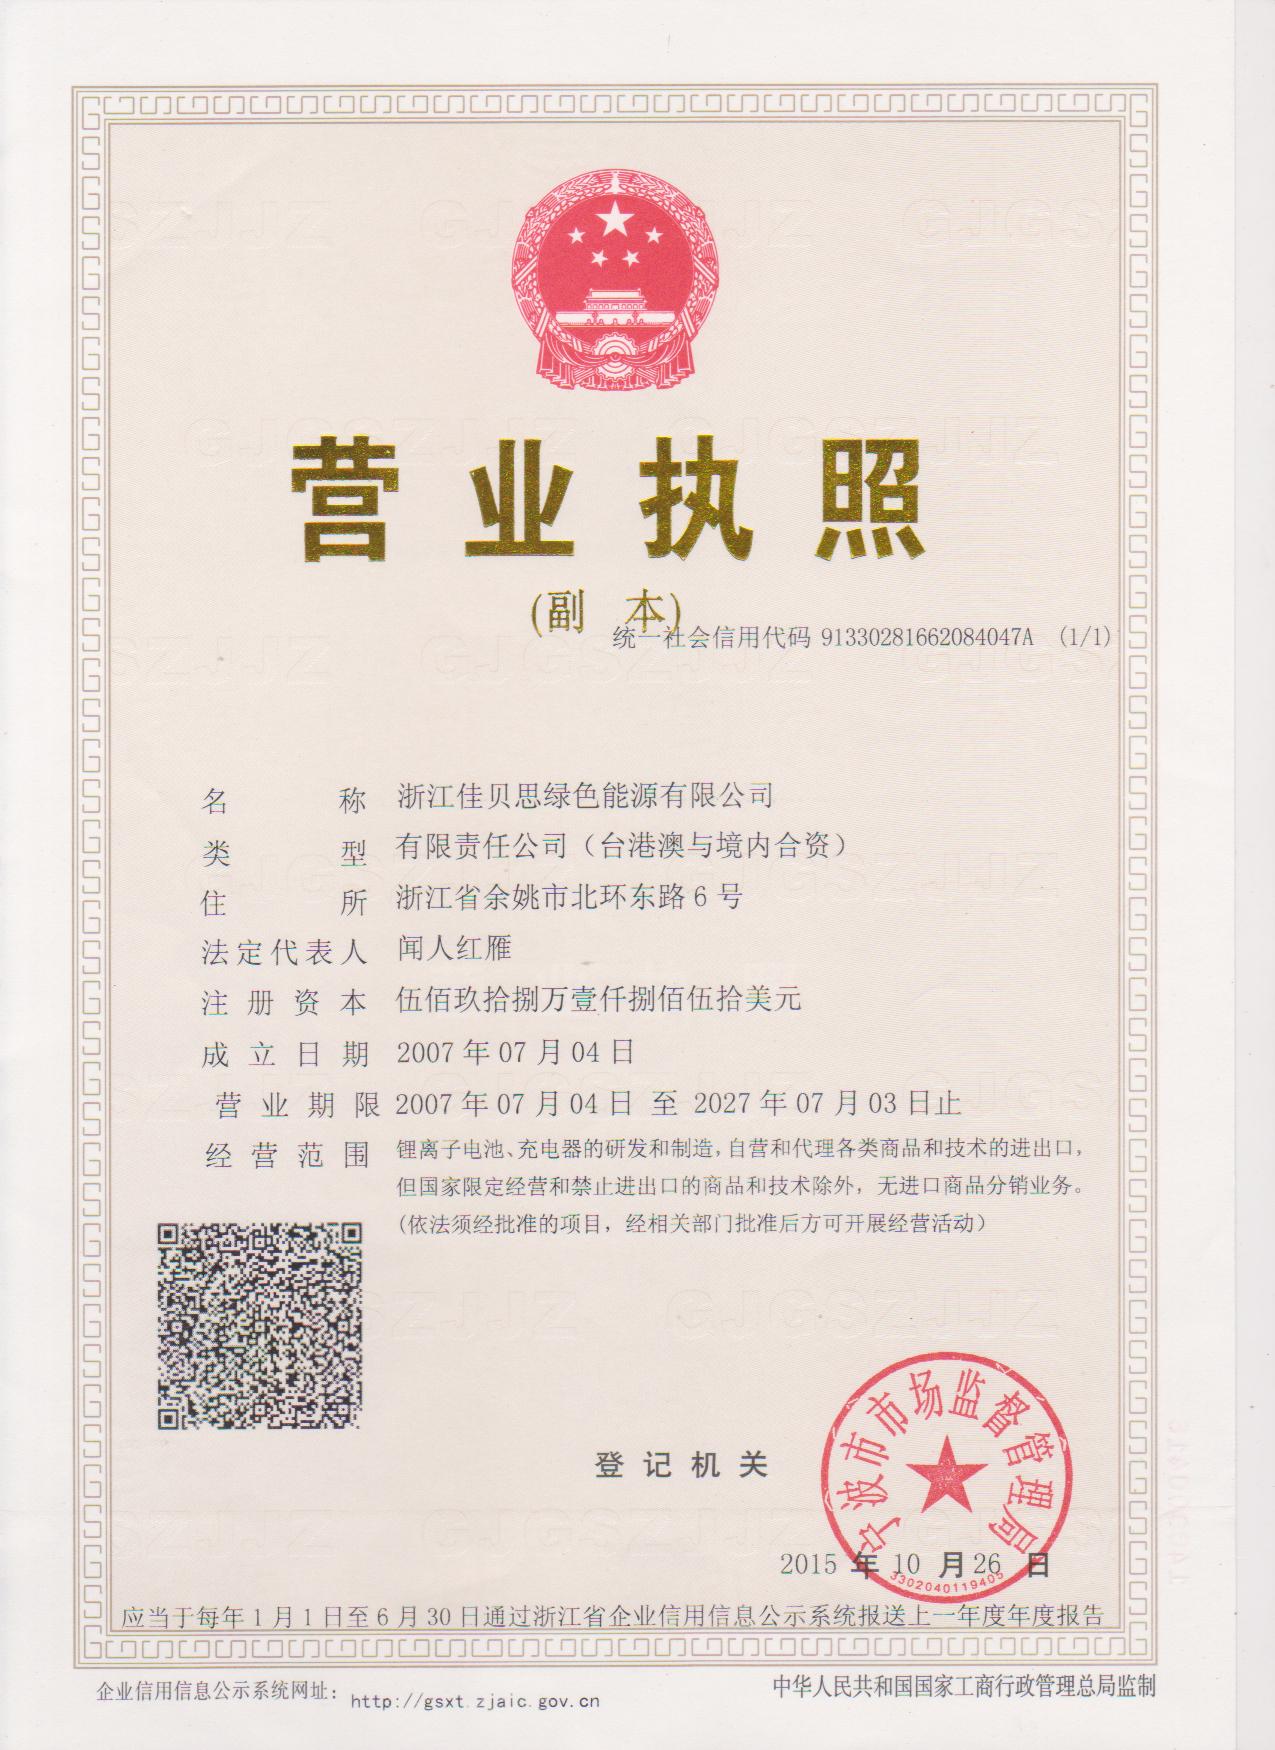 Company trade license